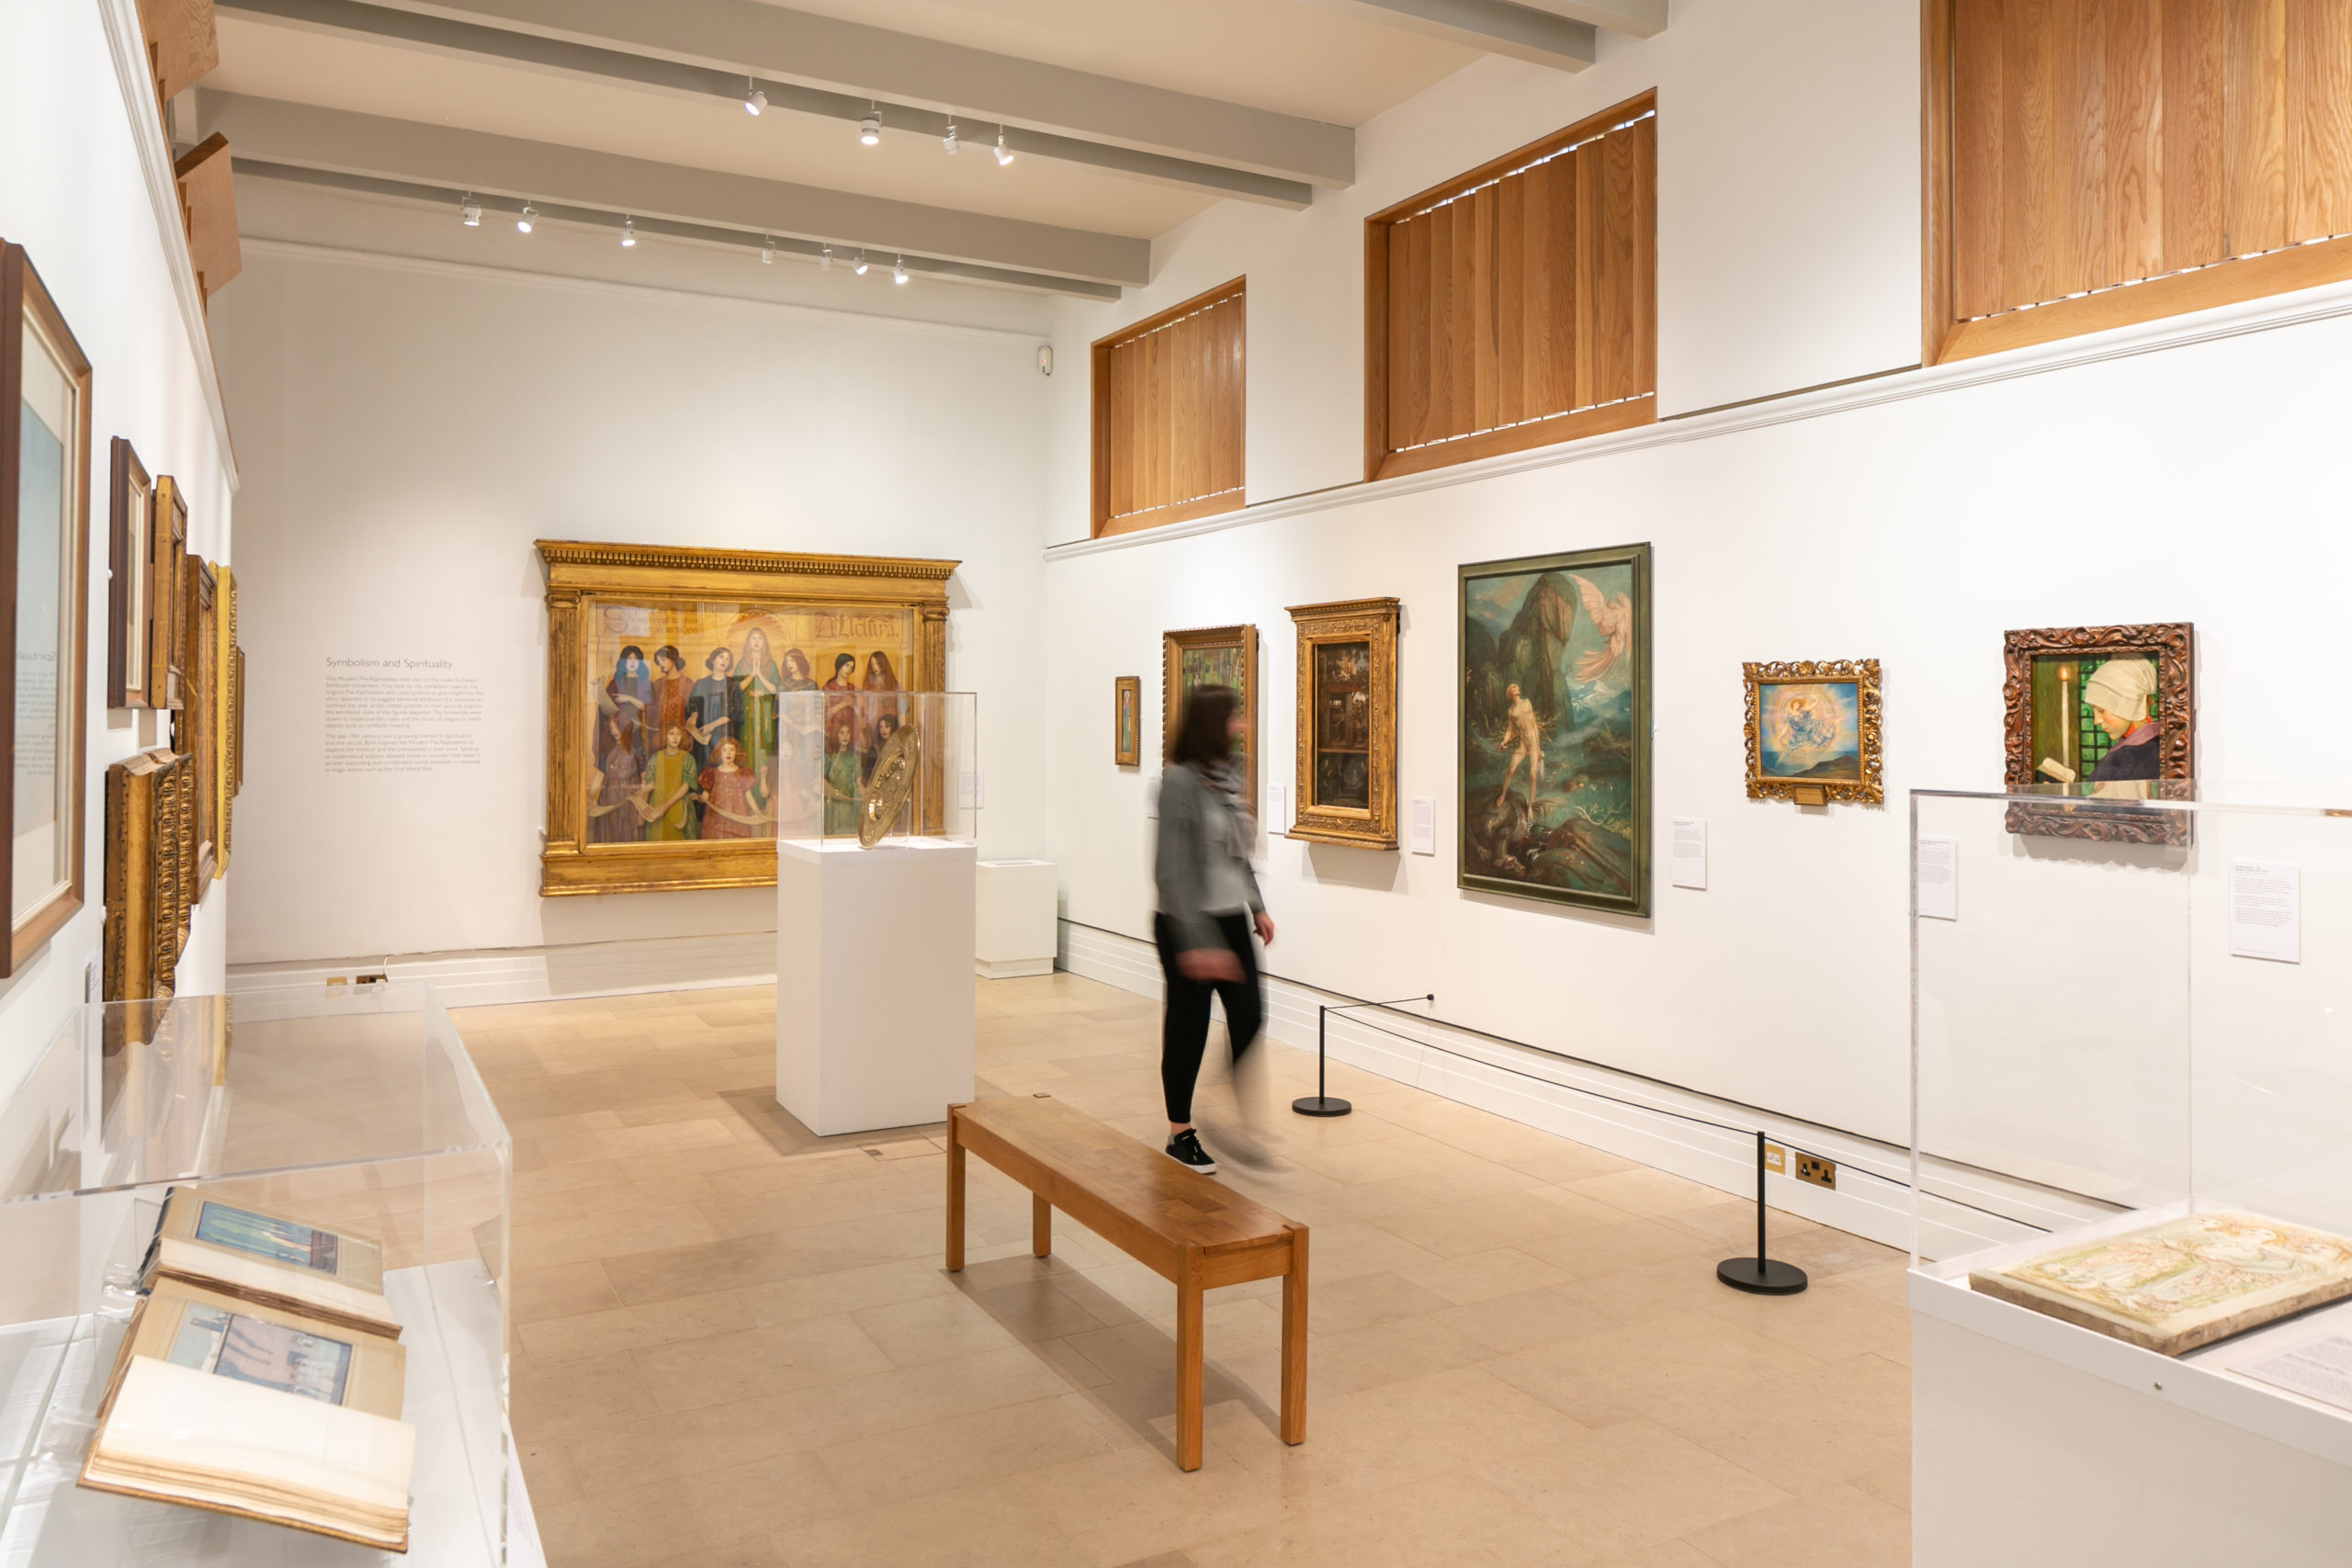 Gallery view of "Dreams and Stories: Modern Pre-Raphaelite Visionaries"